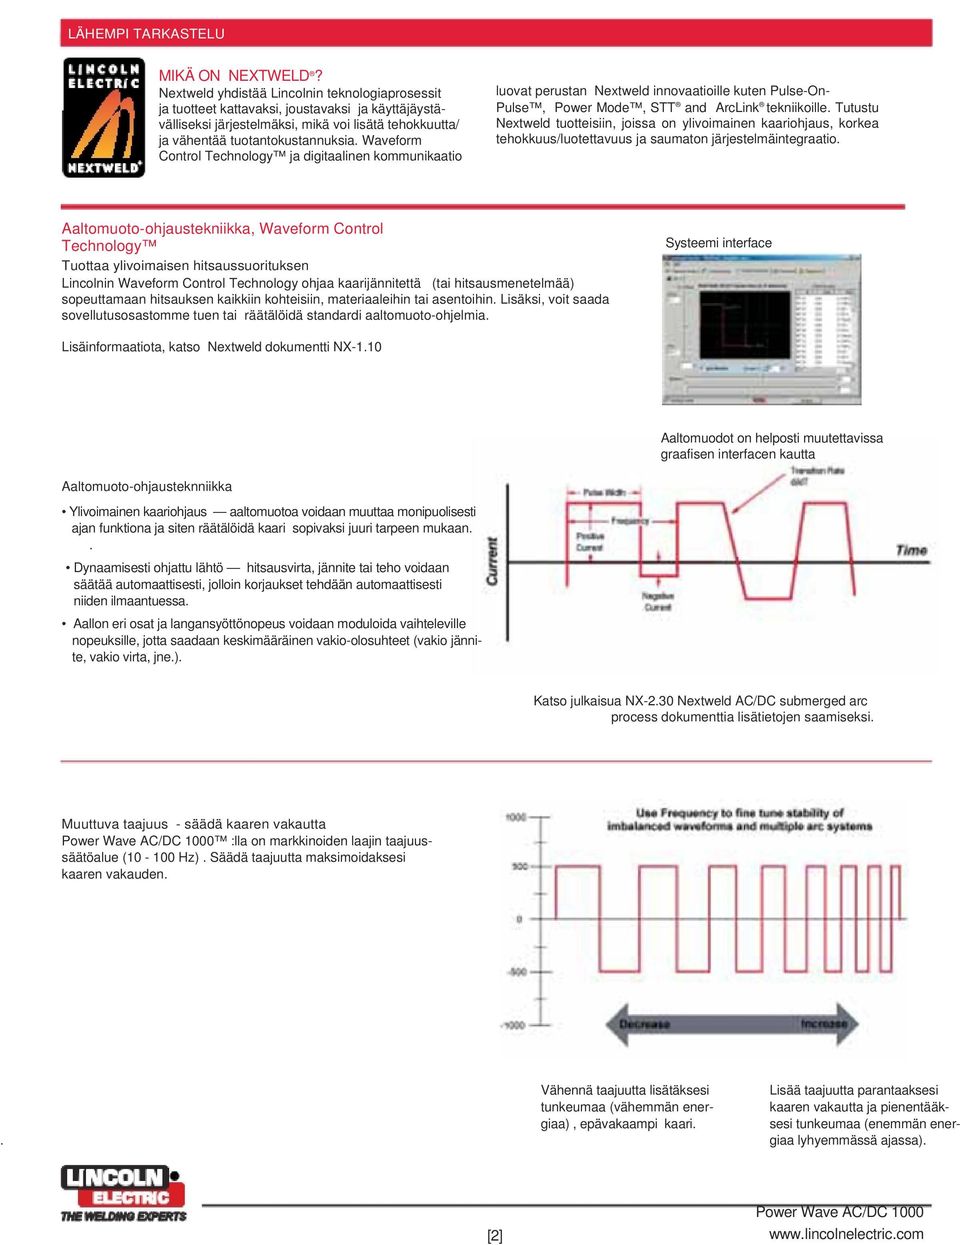 Waveform Control Technology ja digitaalinen kommunikaatio luovat perustan Nextweld innovaatioille kuten Pulse-On- Pulse, Power Mode, STT and ArcLink tekniikoille.